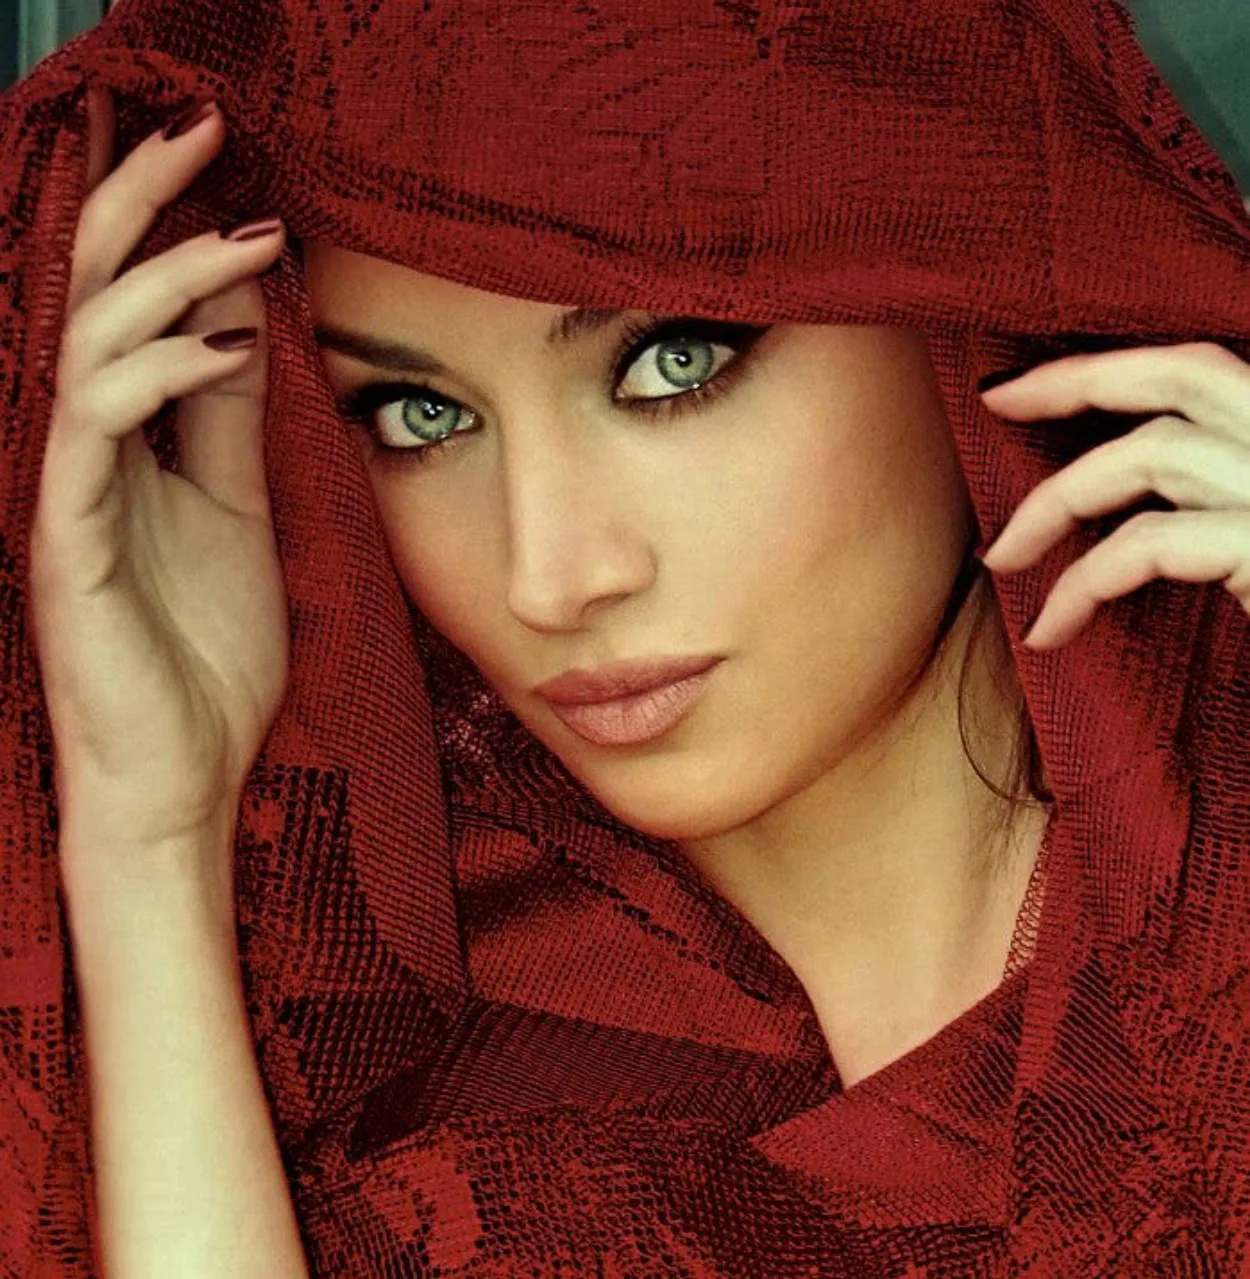 Iran beautiful woman or selebgram